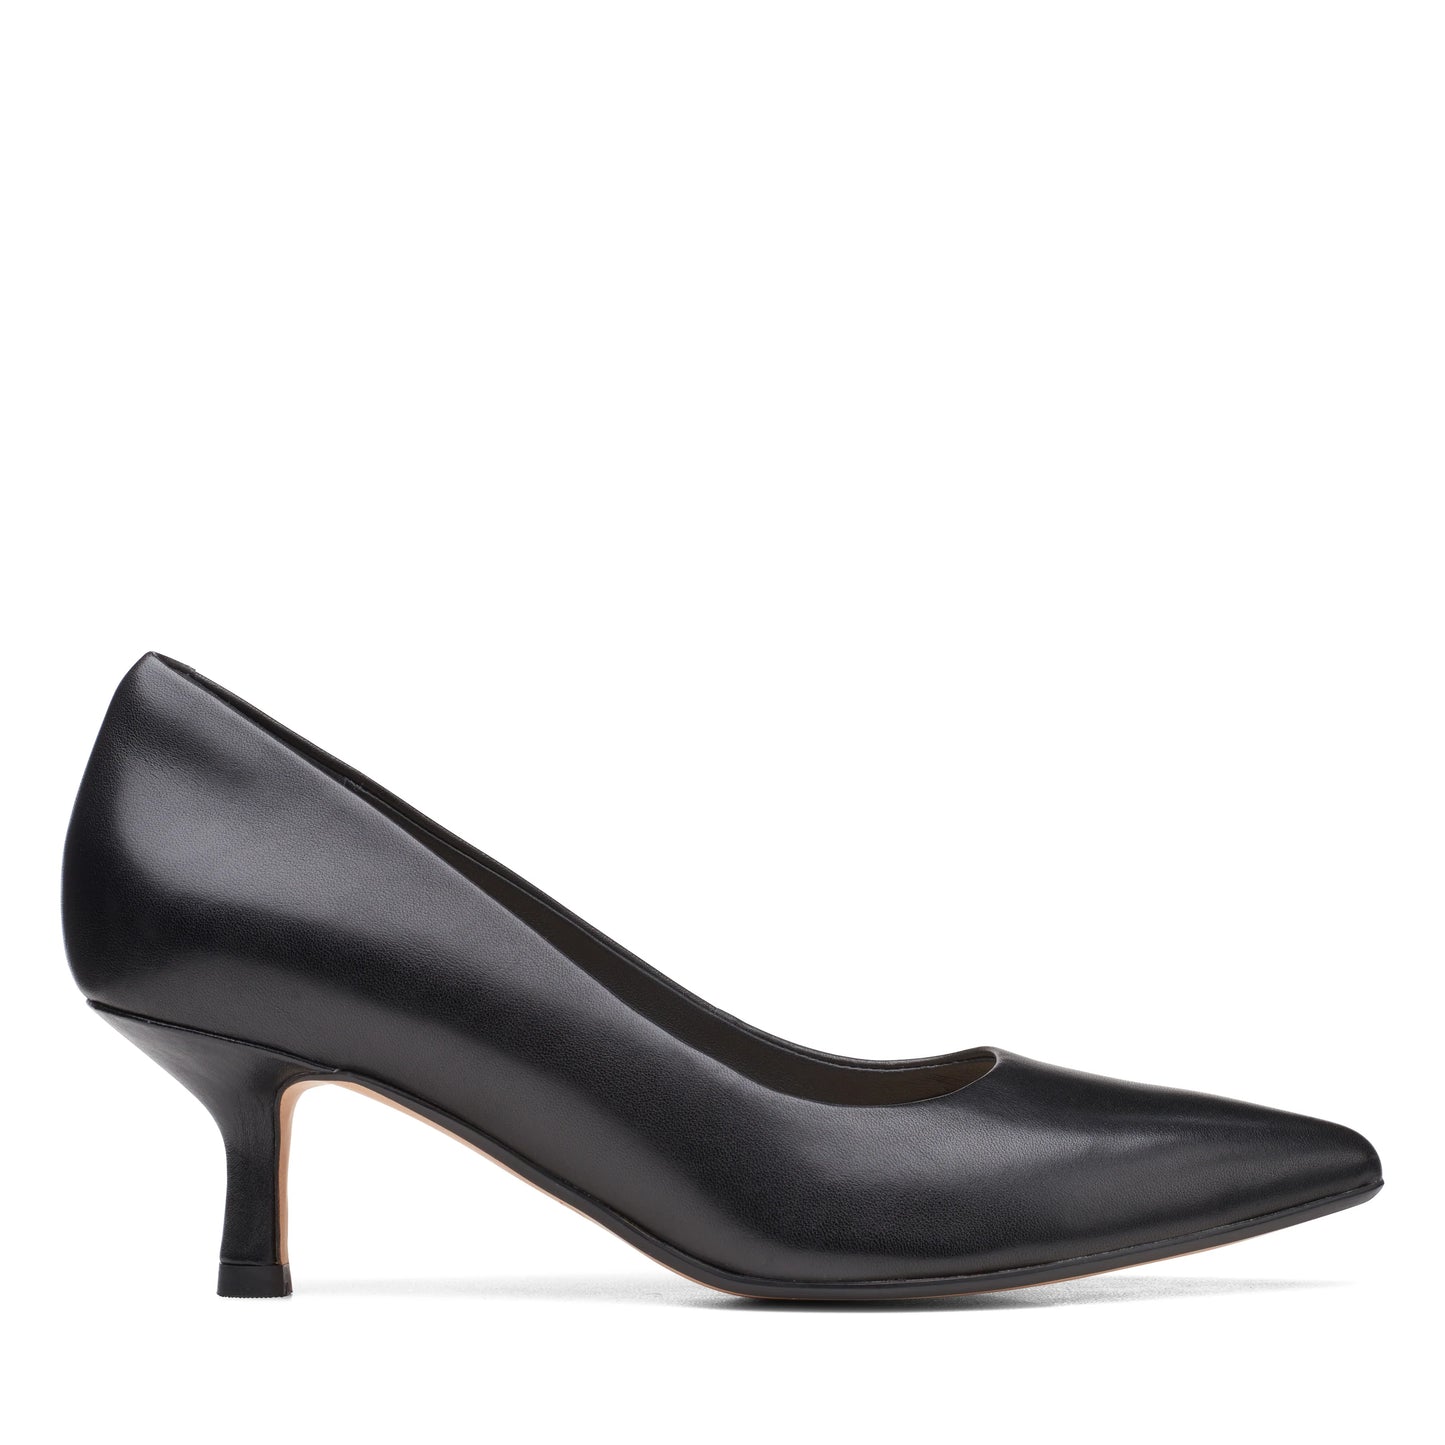 Zapatos De Tacón De La Marca Clarks Para Mujer Modelo Violet Rae Black Leather En Color Negro